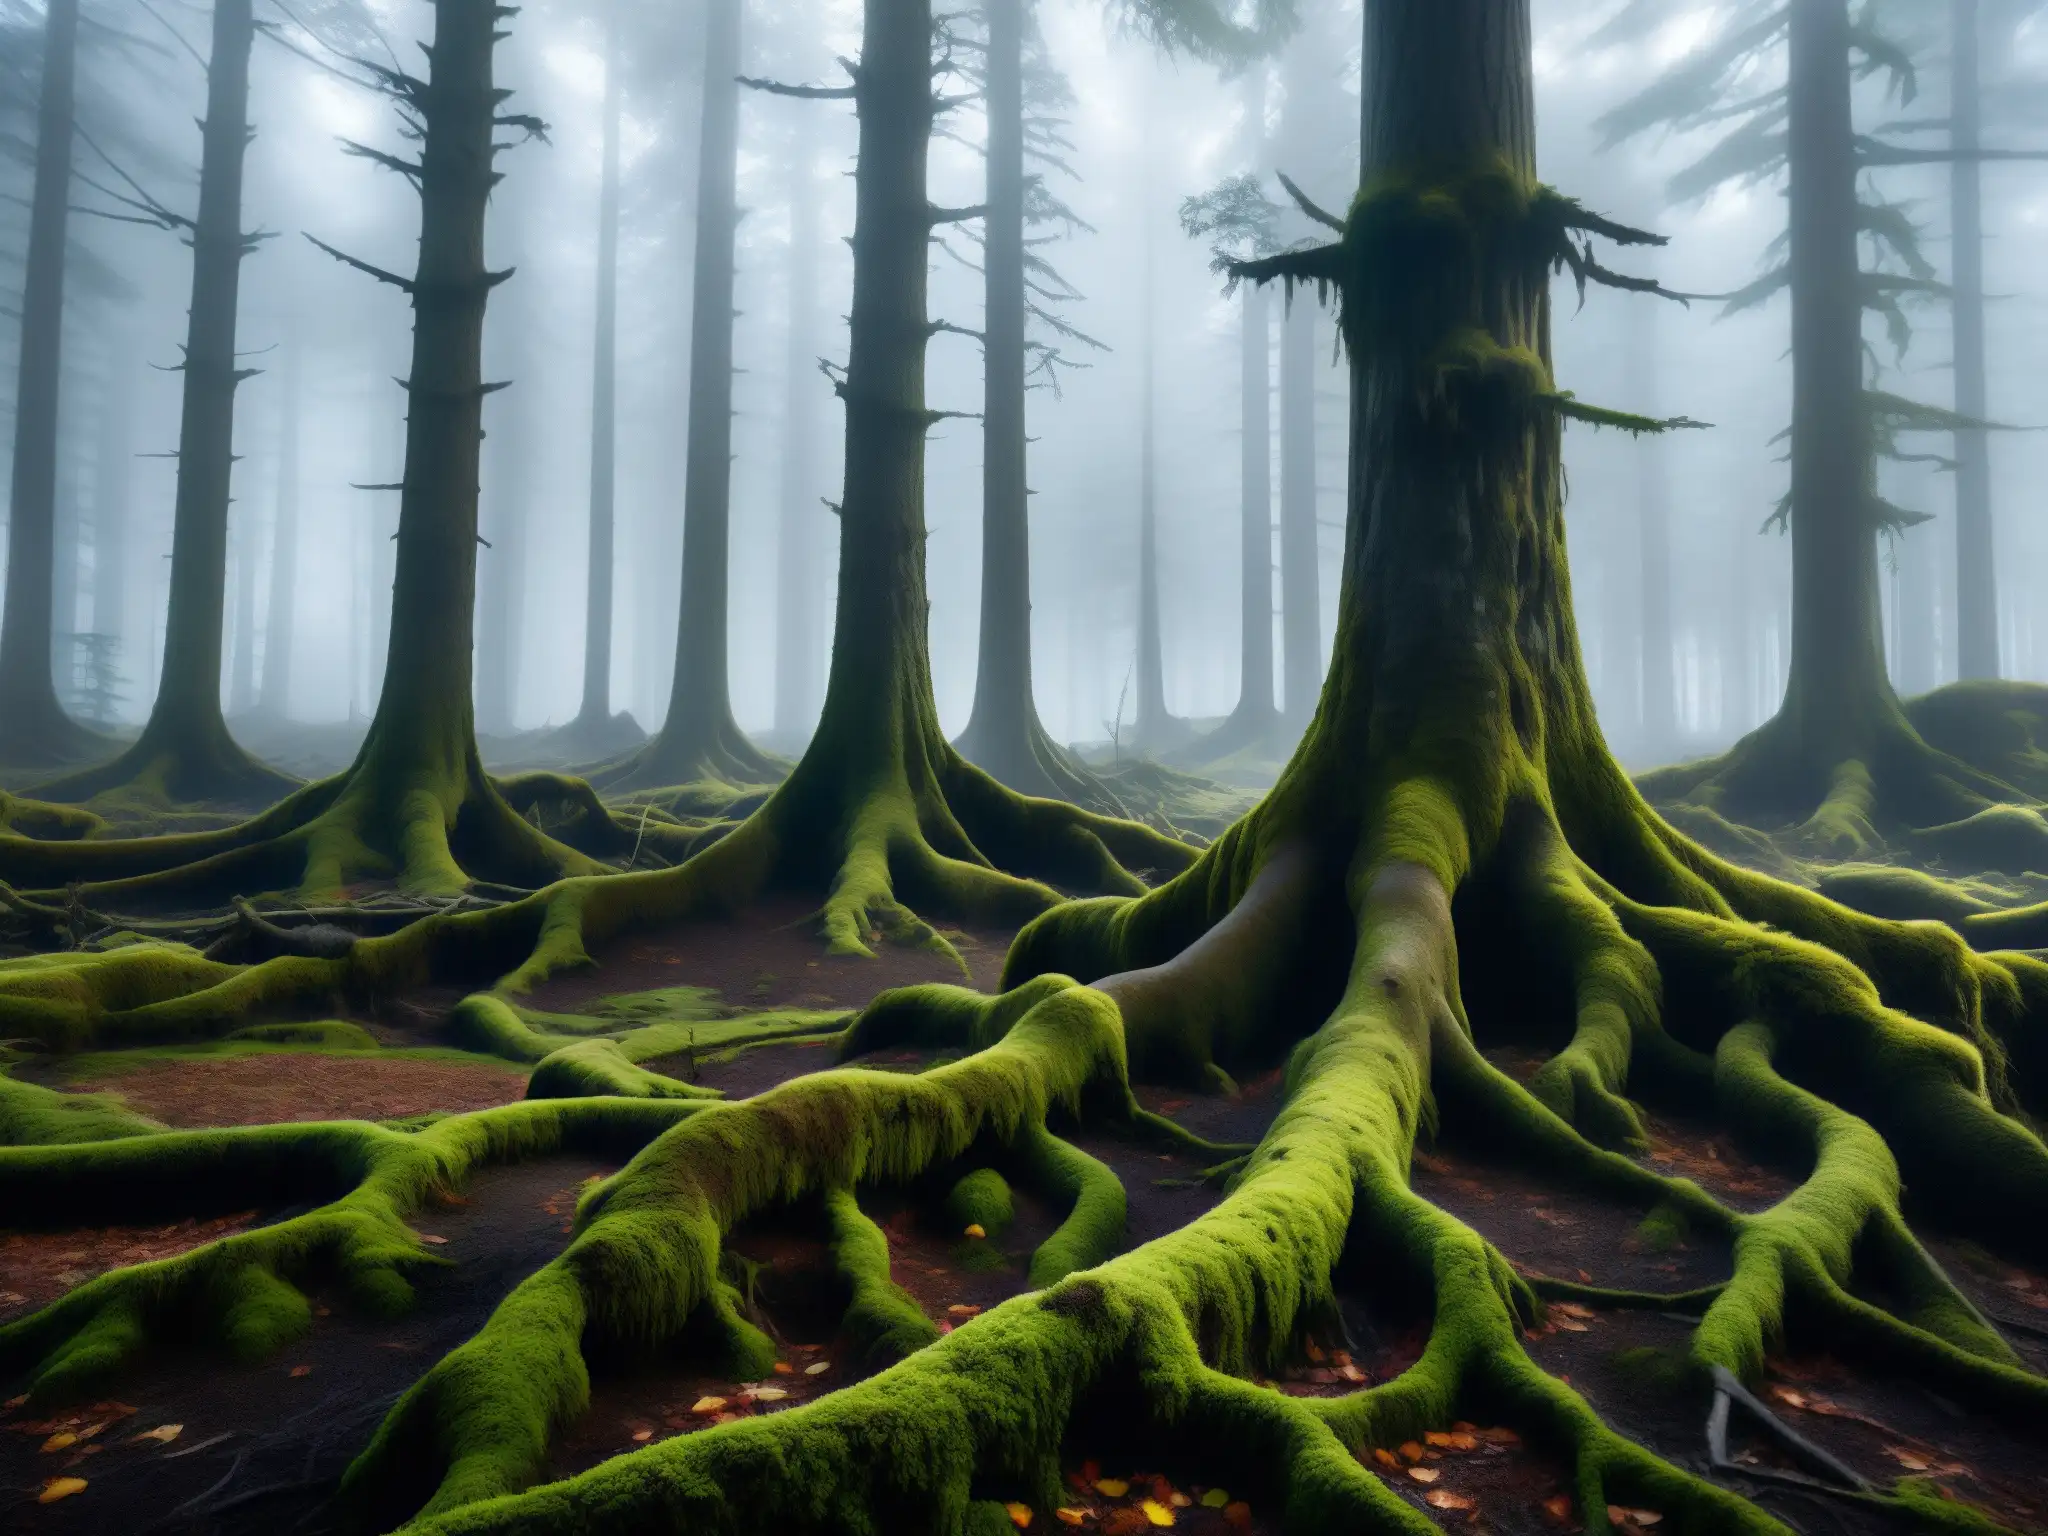 Un bosque siniestro y enigmático, con árboles cubiertos de musgo y una atmósfera misteriosa